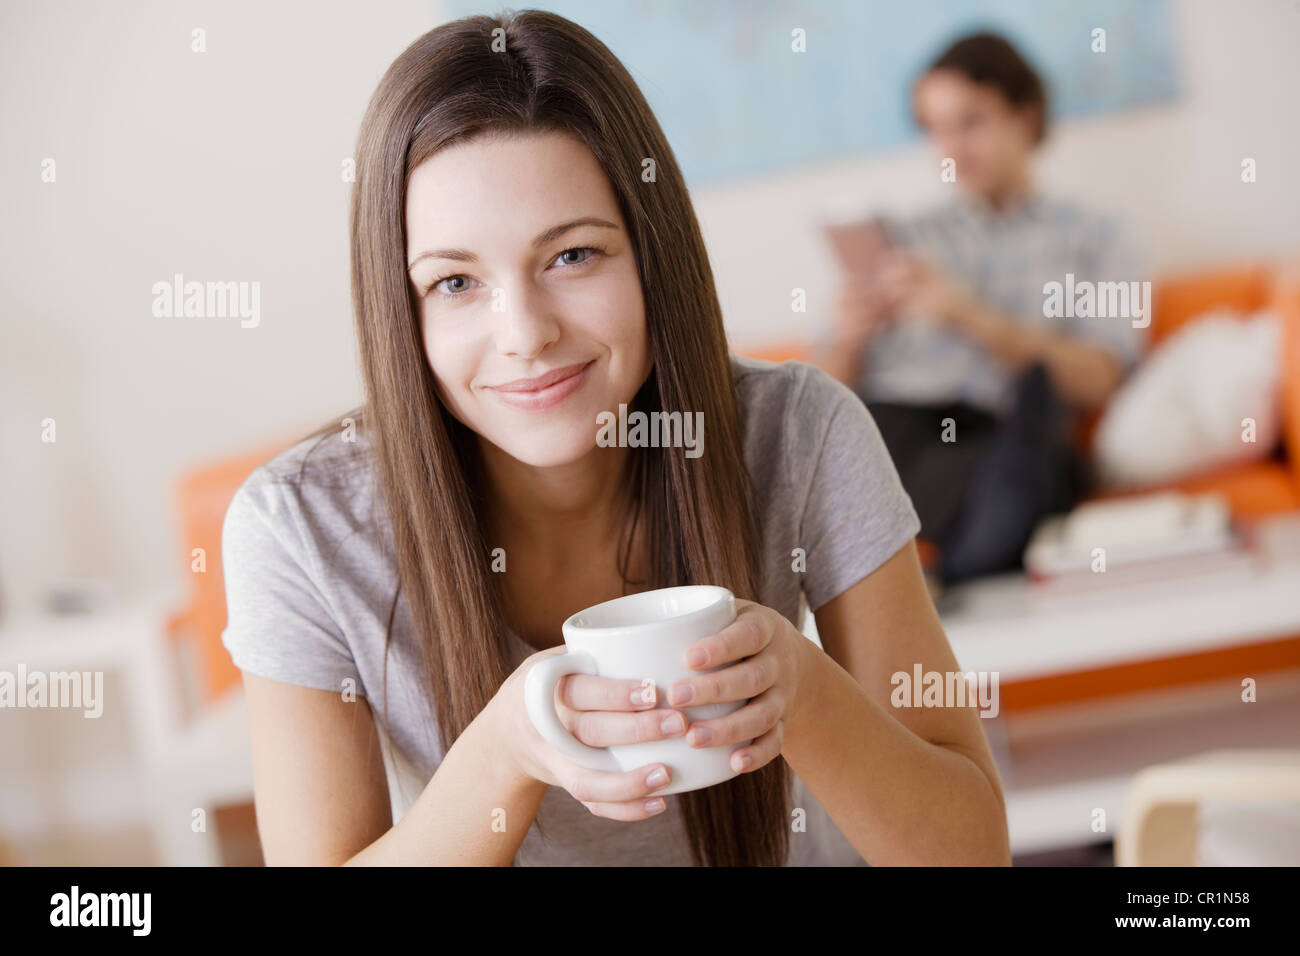 Stati Uniti, California, Los Angeles, Ritratto di giovane donna holding mug, uomo in background Foto Stock